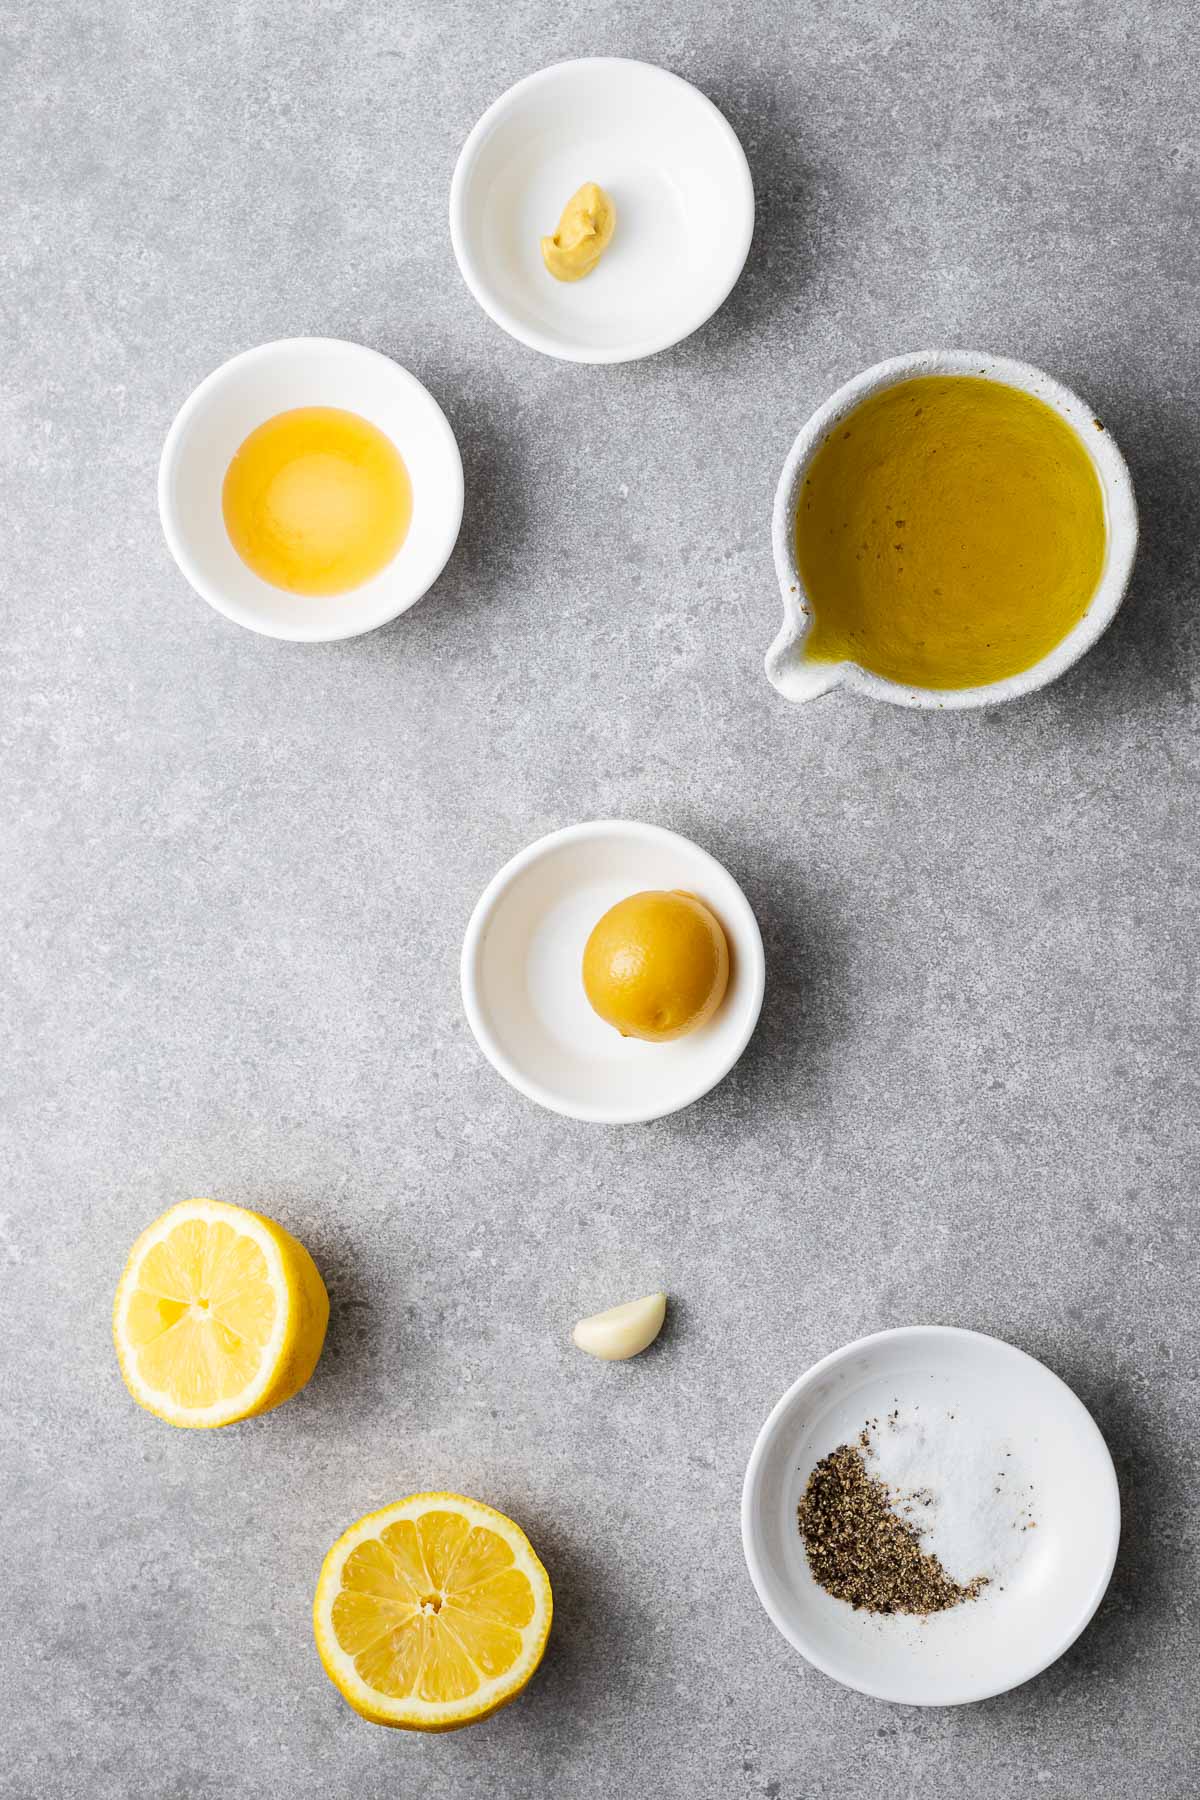 Ingredients for preserved lemon vinaigrette including fresh lemons, preserved lemon, a garlic clove, honey, Dijon mustard, and extra virgin olive oil with salt and pepper.